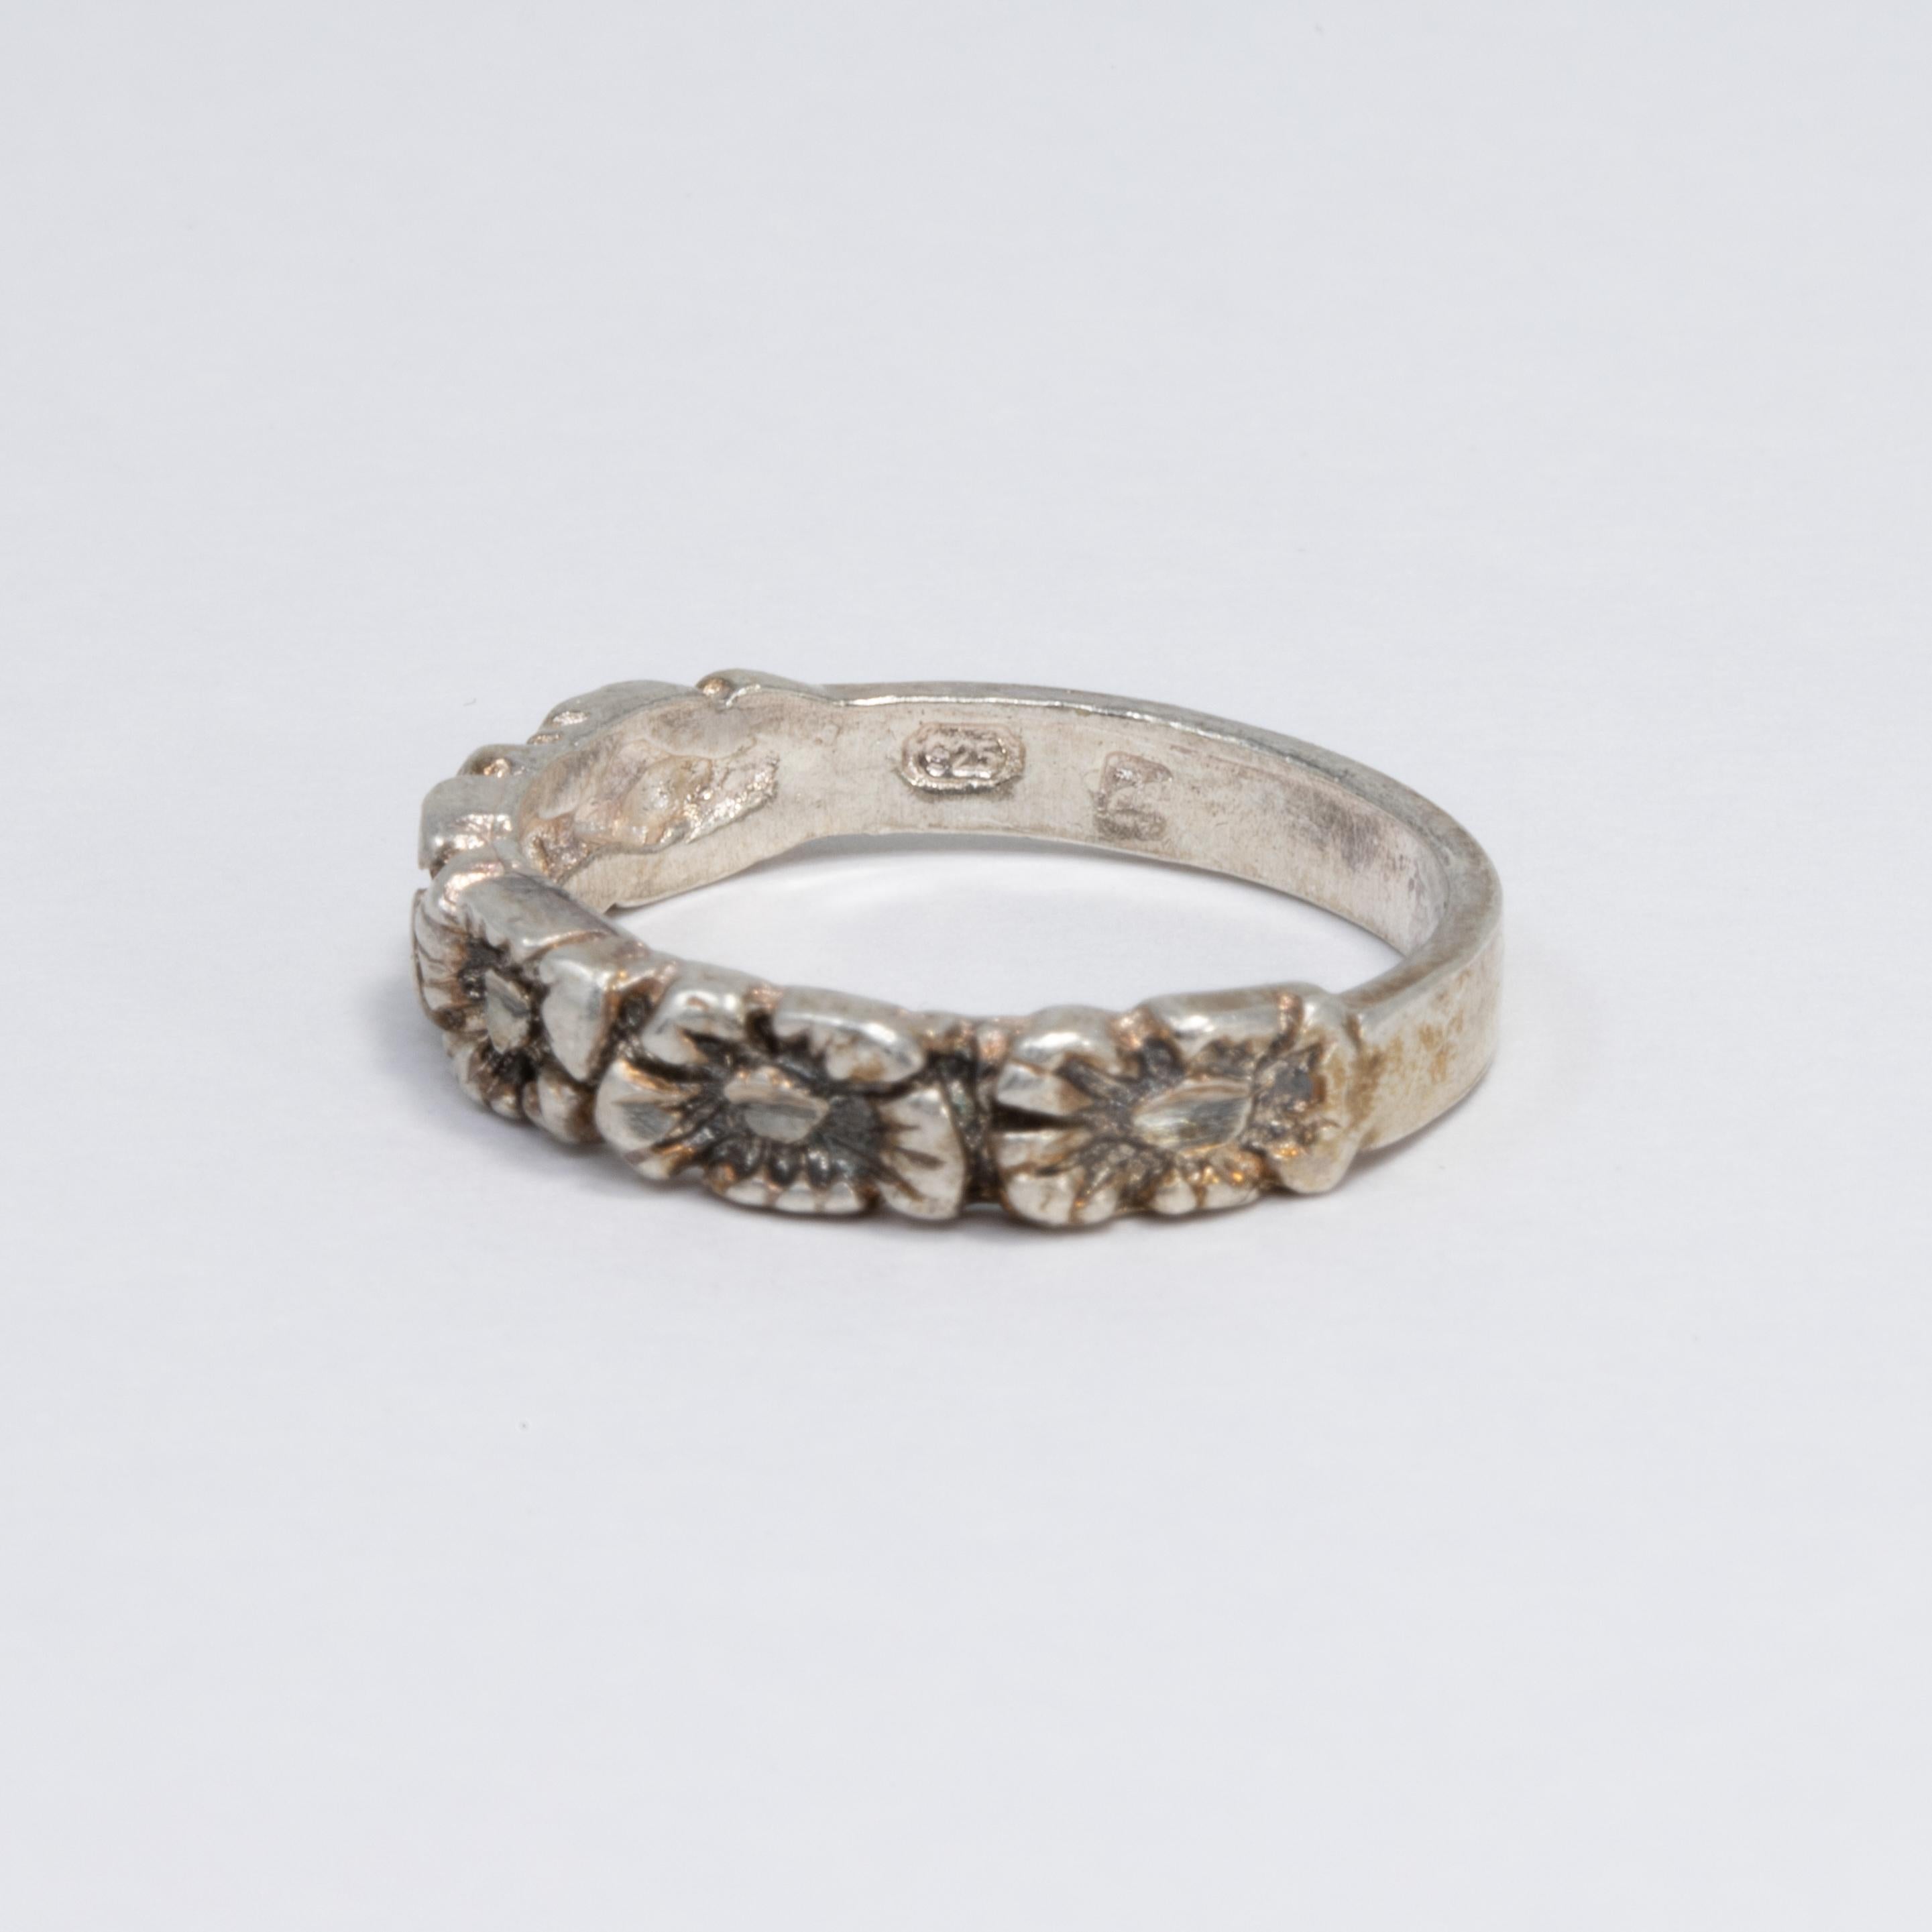 Ein wunderschöner Vintage-Ring aus Sterlingsilber, der mit einer Reihe von Blumen verziert ist.
Ring Größe US 8.5

Marken / Punzierungen / etc: 925